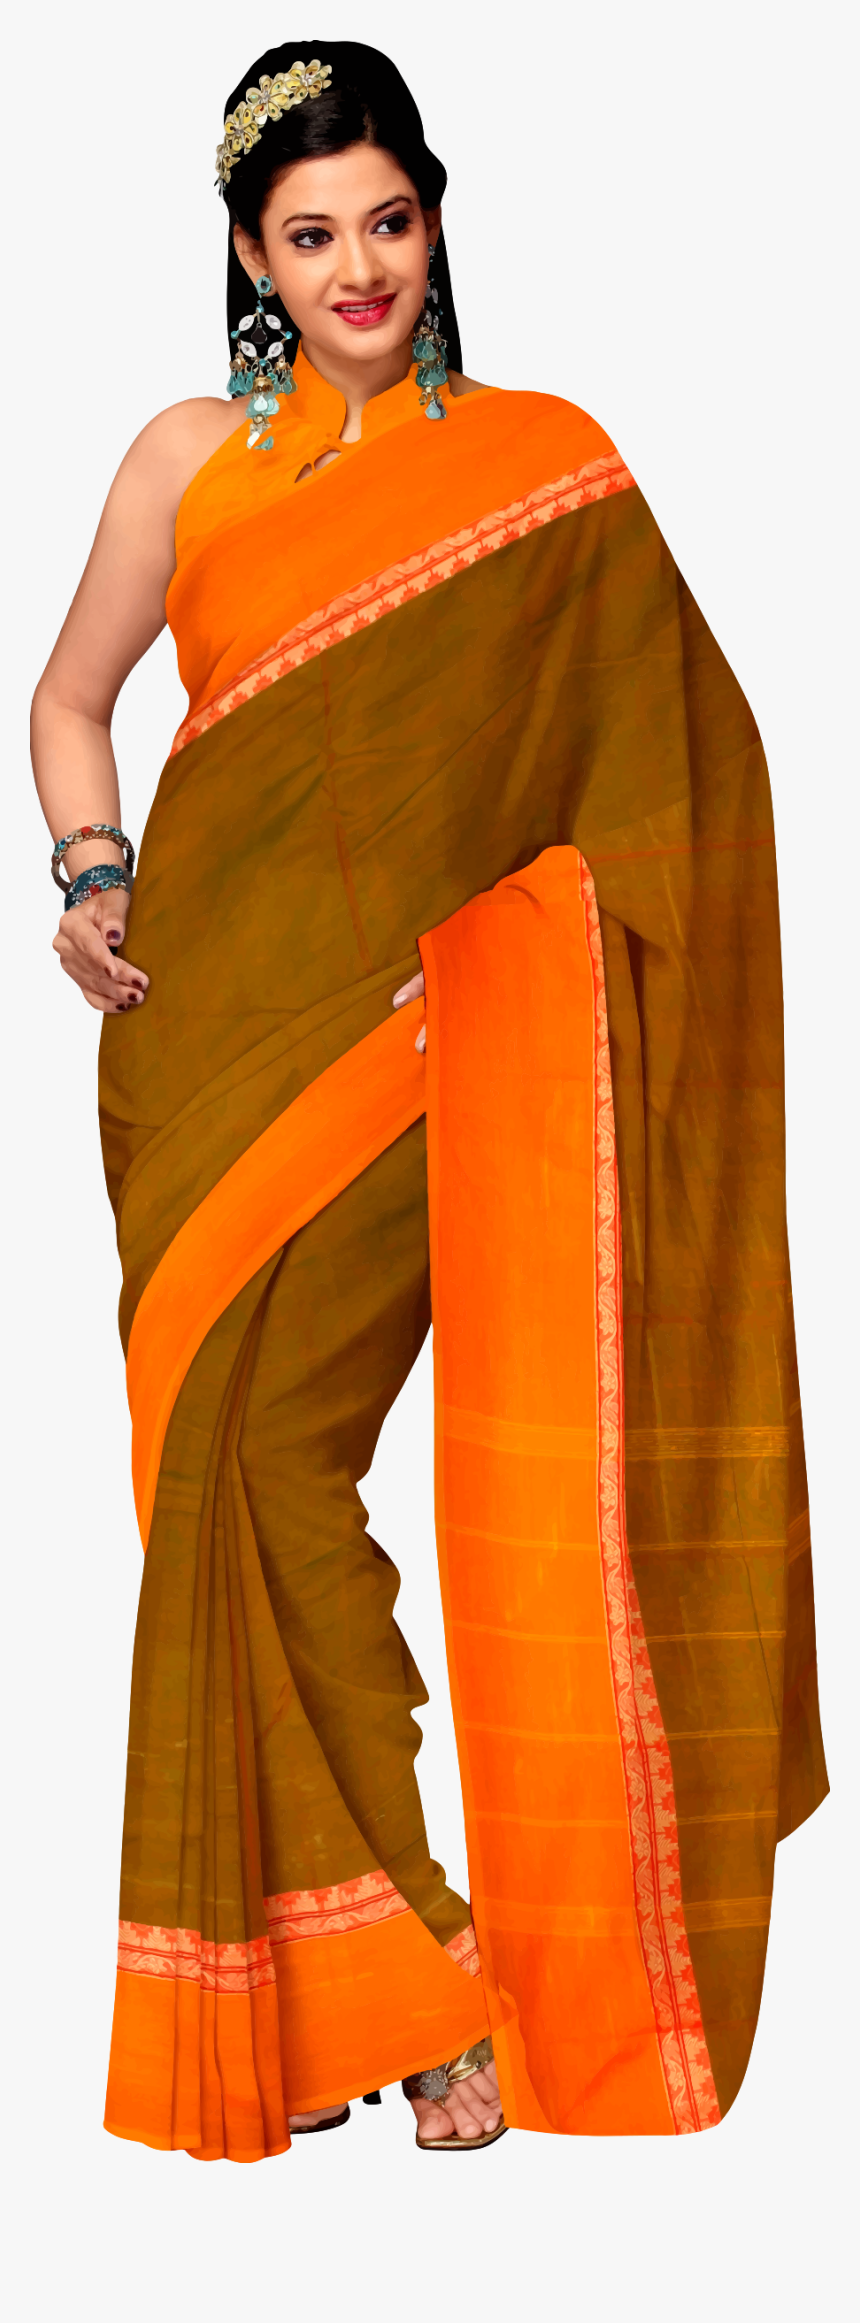 Woman In Saree 4 Clip Arts - Karwa Chauth Saree 2019, HD Png Download ...